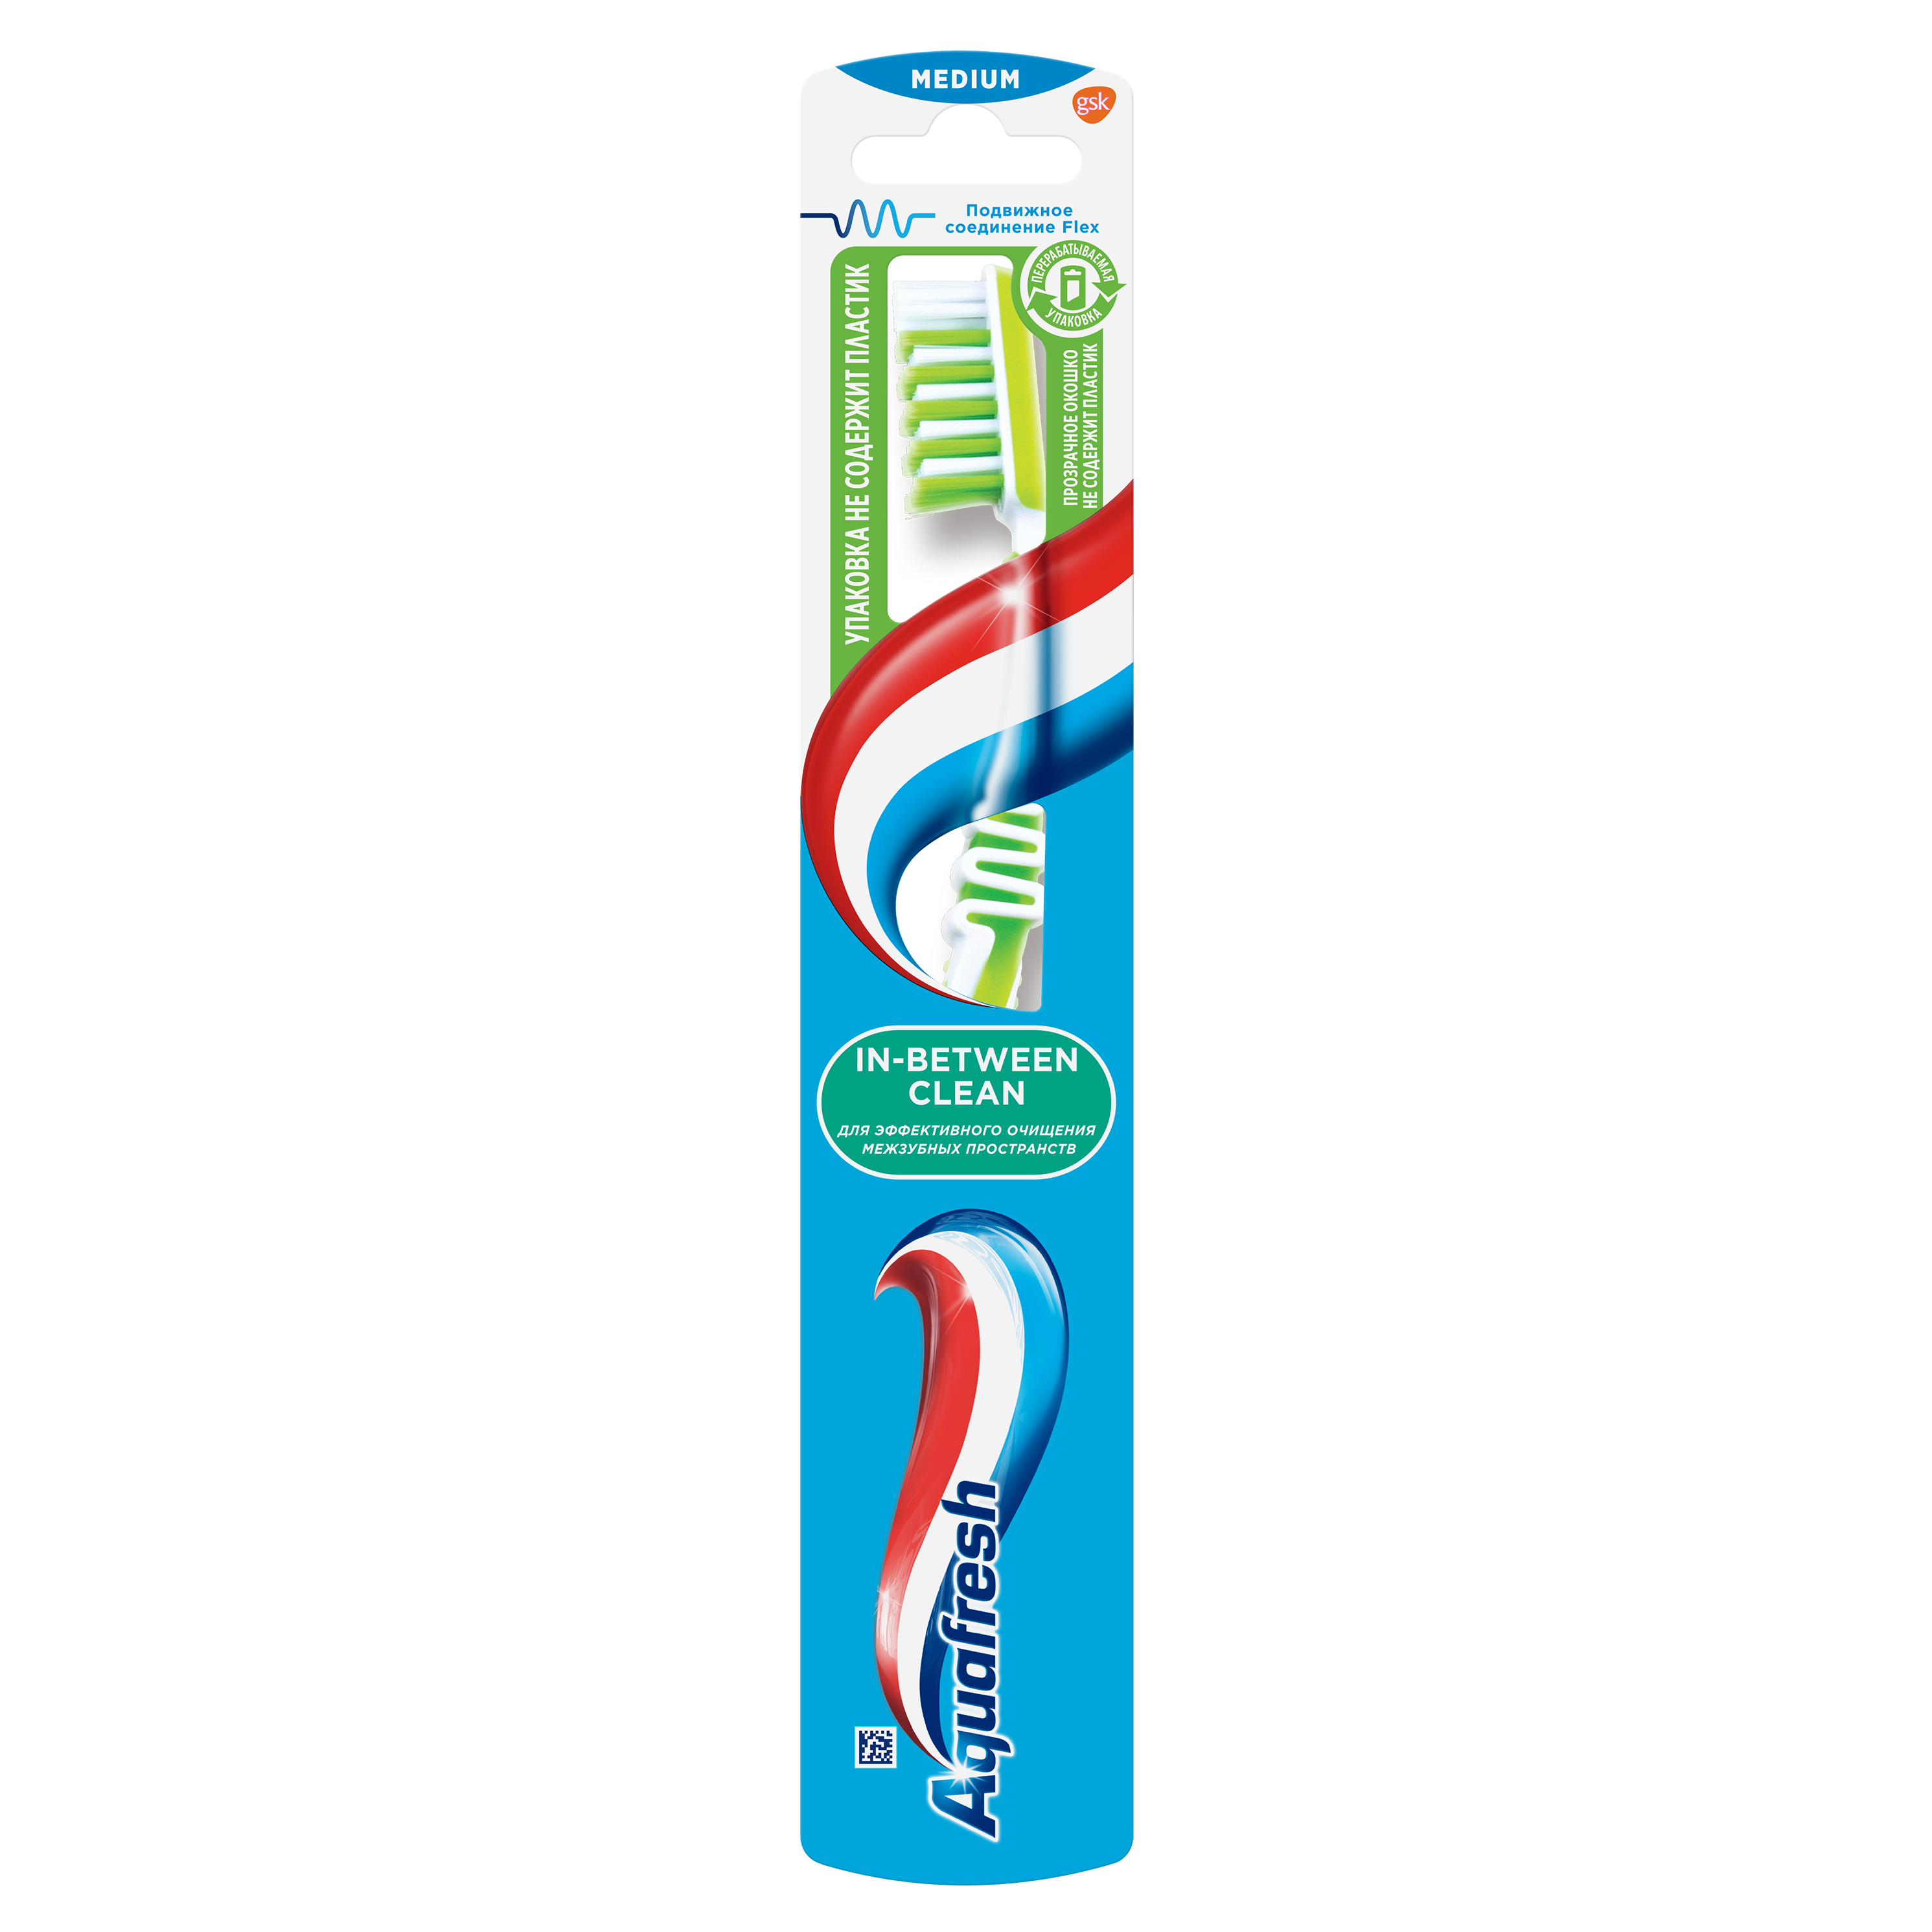 Зубная щетка Aquafresh In-between Clean для очищения зубов и межзубных промежутков,средней жесткости, в ассортименте jordan зубная щетка jordan green clean medium средняя жесткость